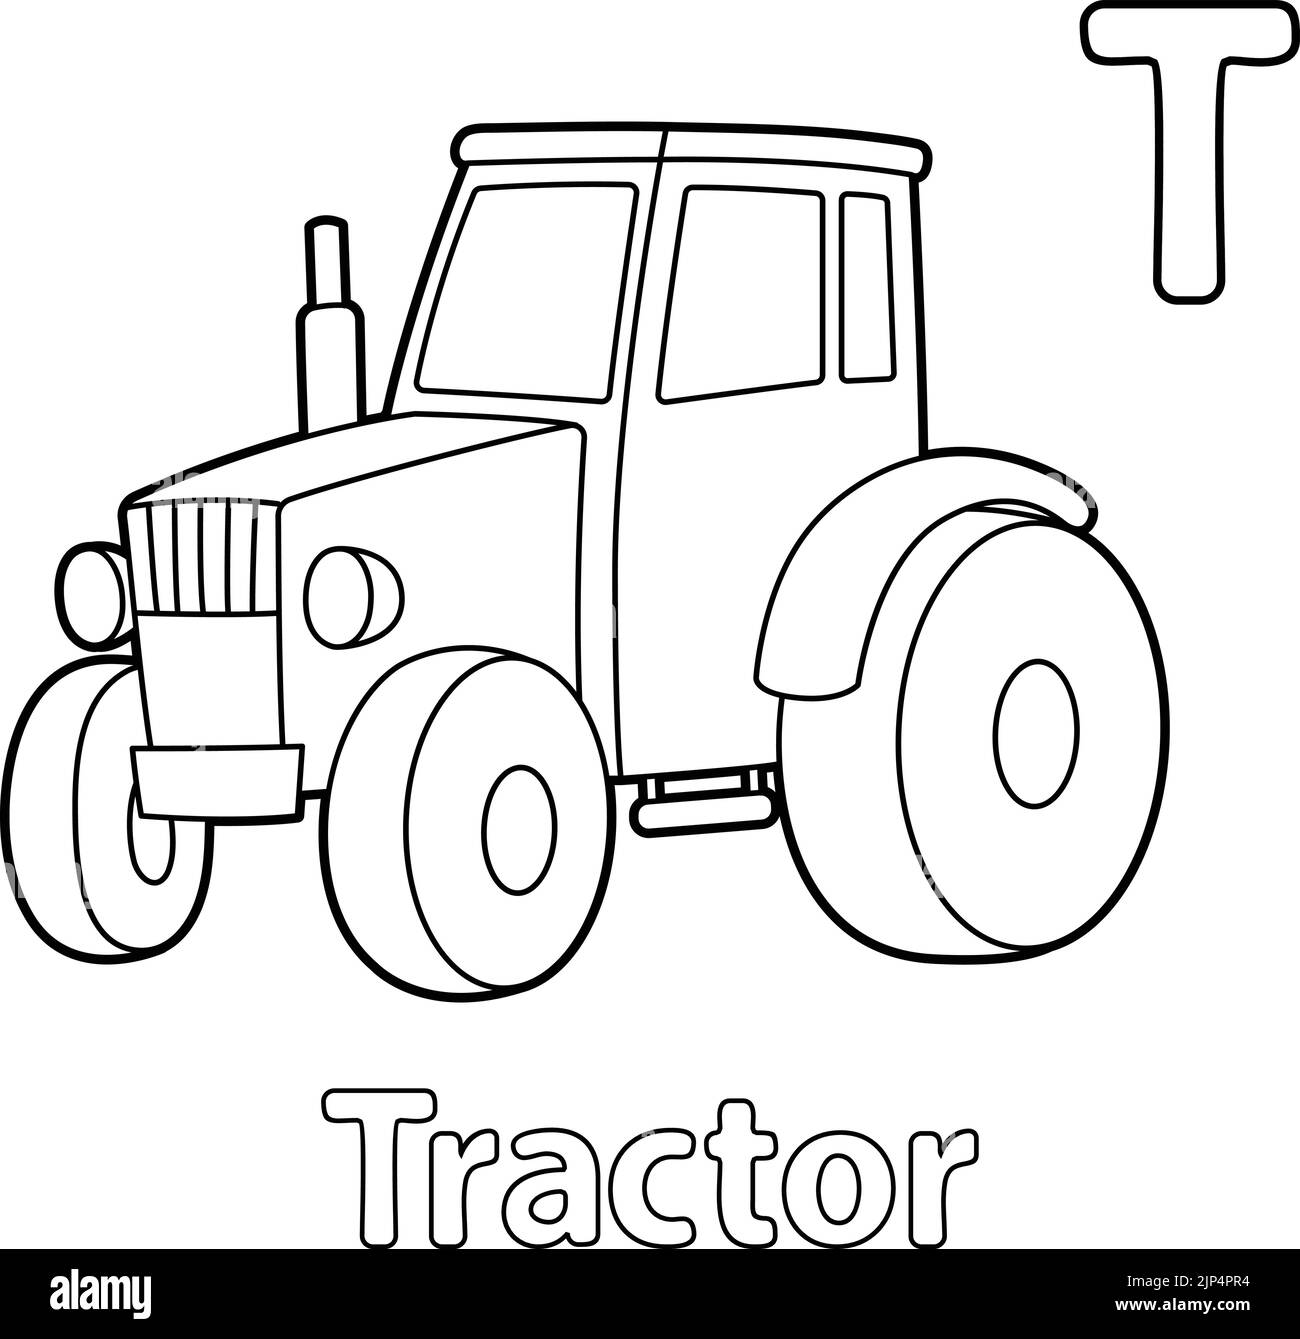 Tracteur Alphabet ABC coloriage page T Illustration de Vecteur